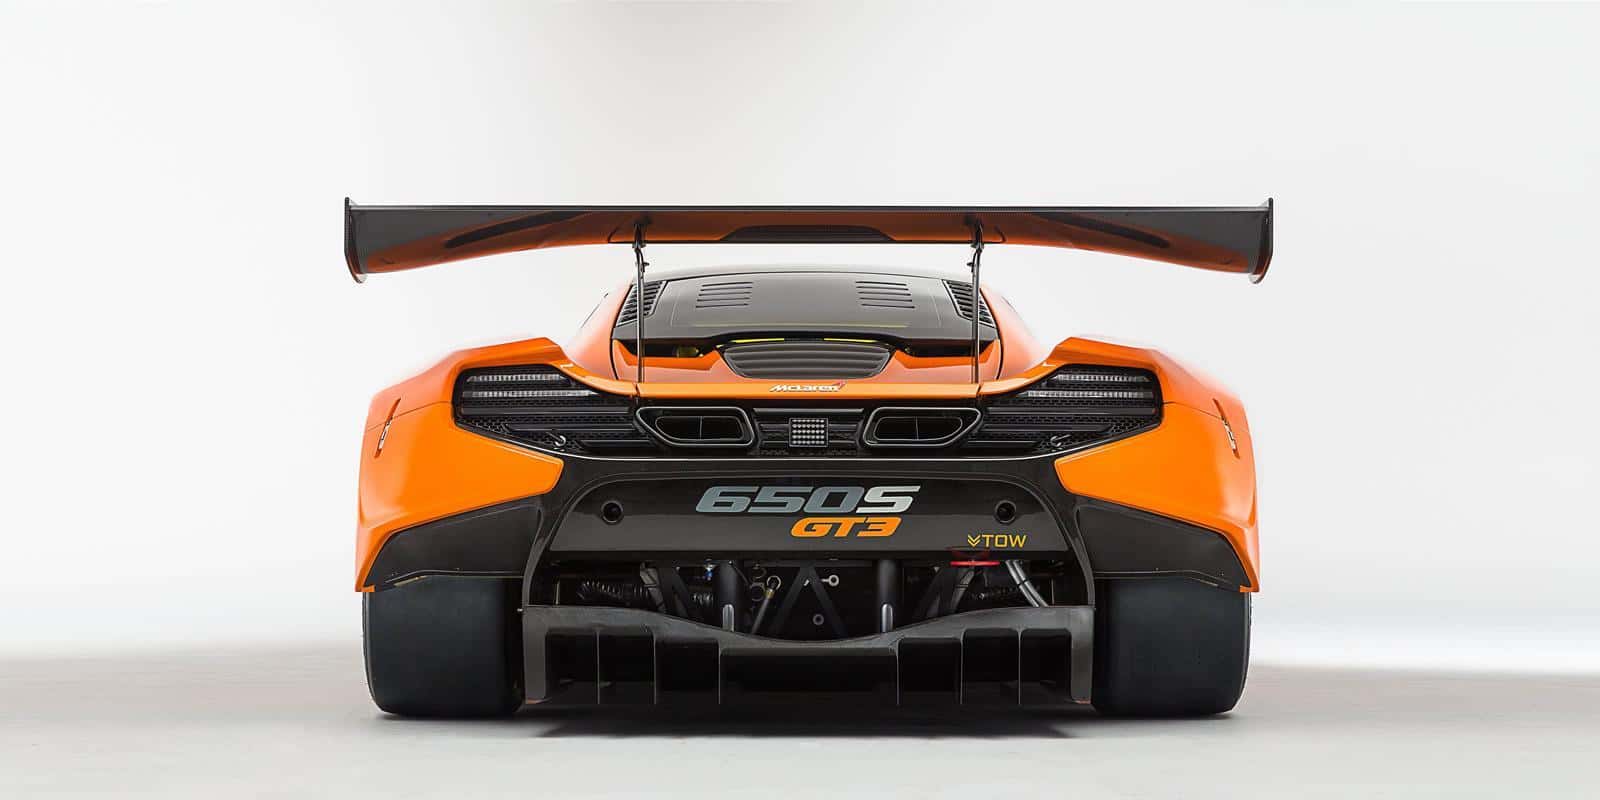 650S-GT3-McLaren 12